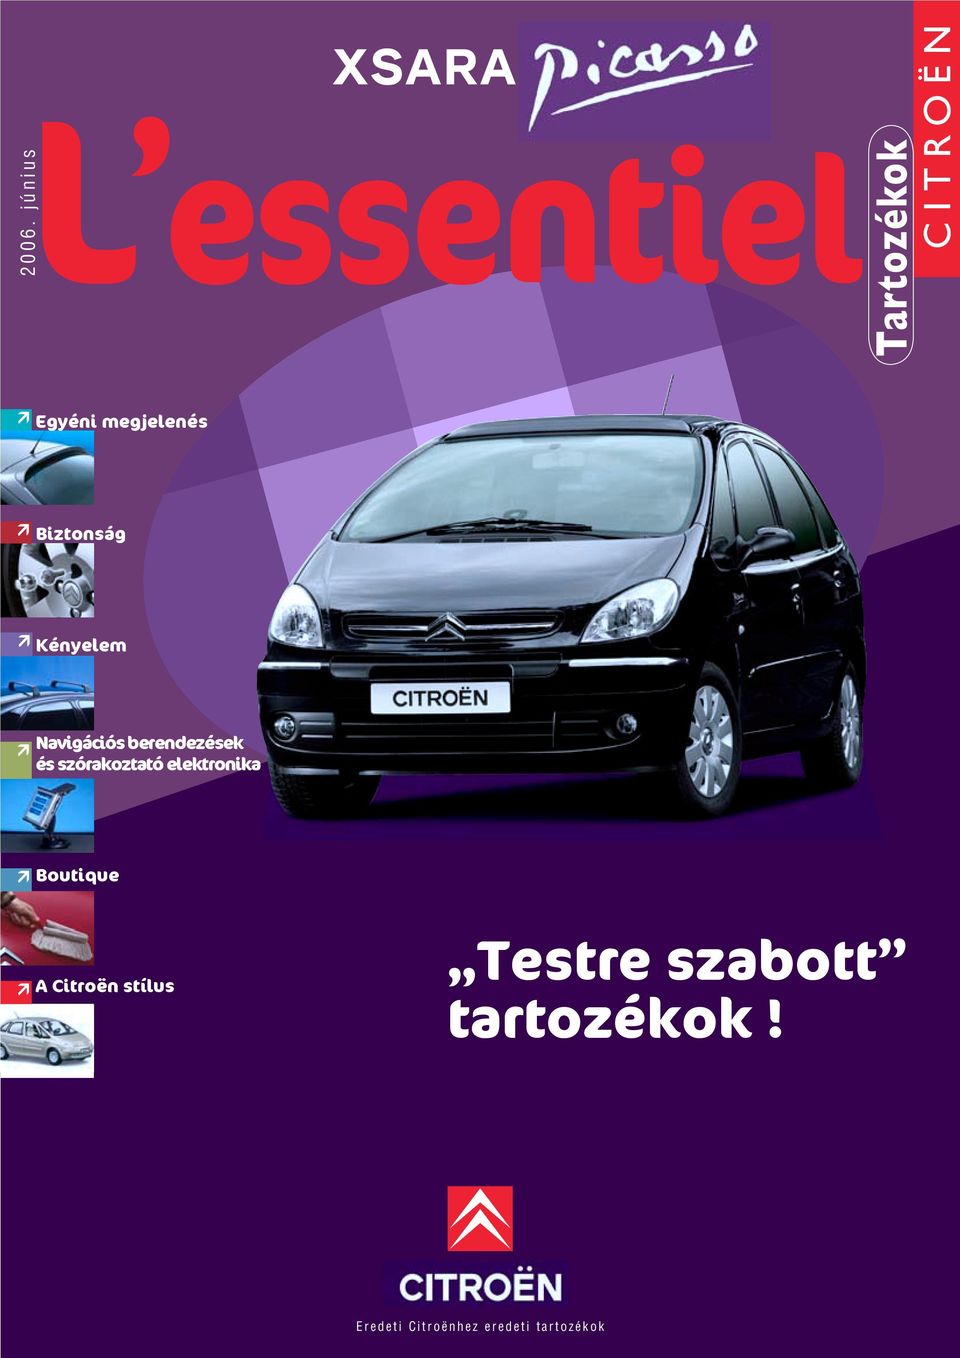 szórakoztató elektronika Boutique A Citroën stílus Testre